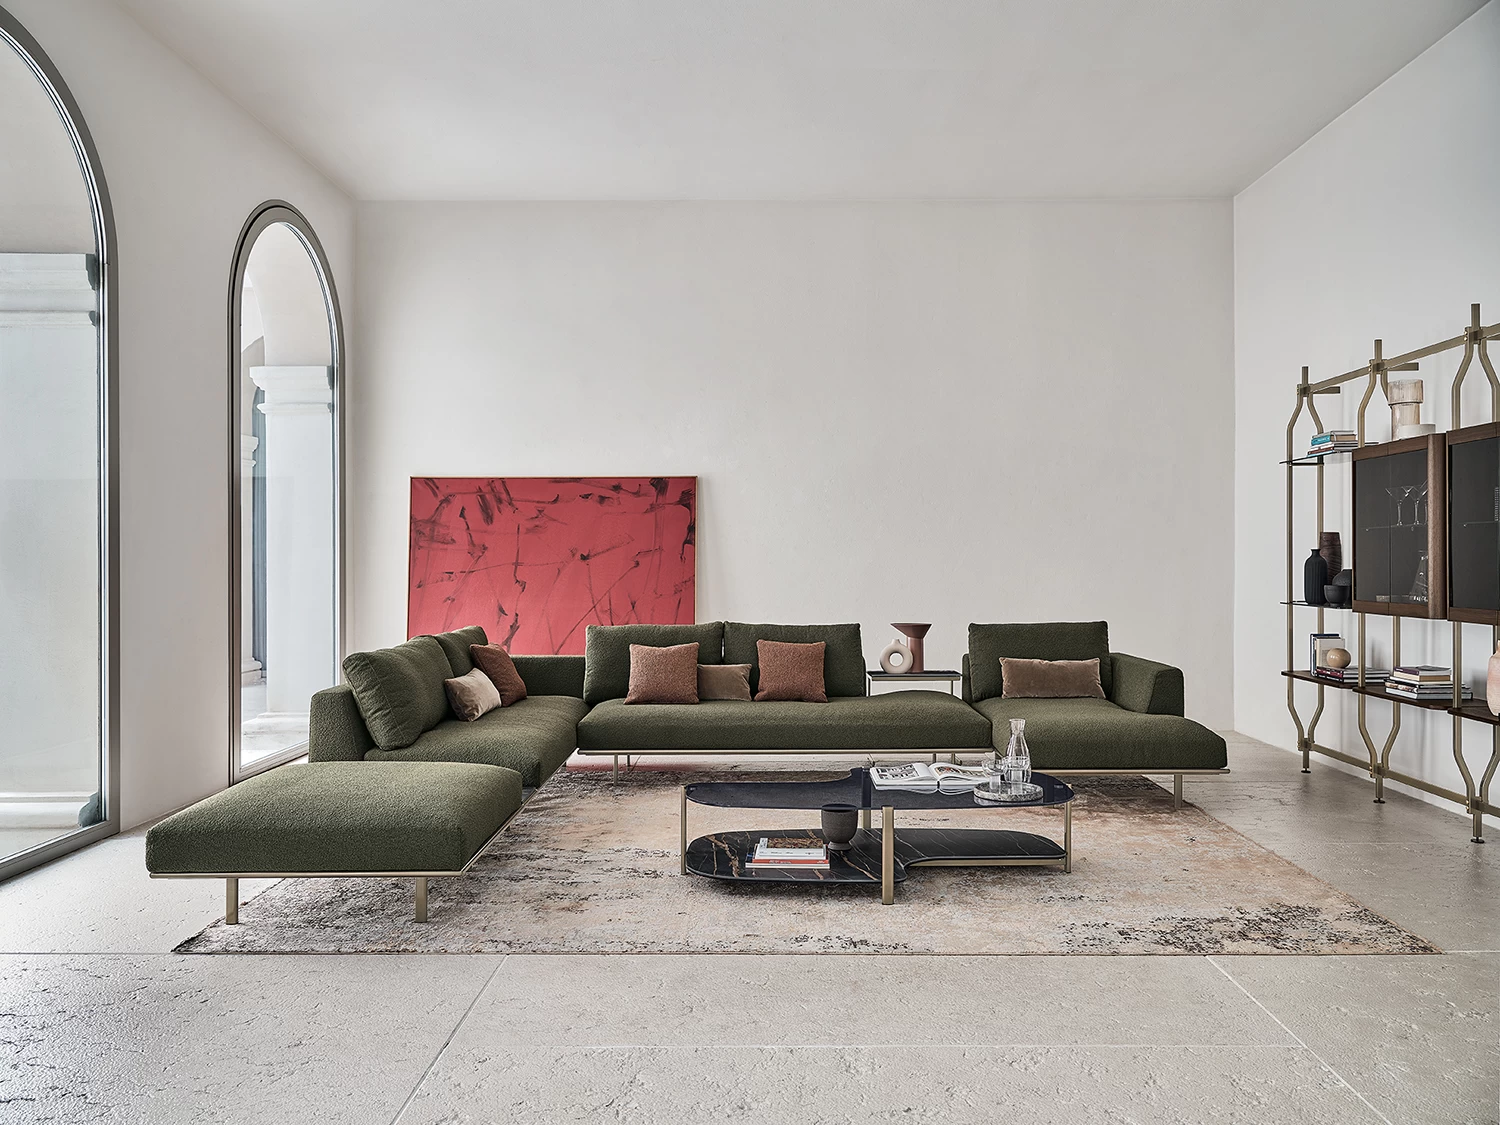 Moderní obývací pokoj se stane nevšední díky měkce olivovému tónu luxusní sedací soupravy. Přírodní tóny doplňuje uhlazený styl kovové police, kterou lze použít i jako moderní obývací stěnu. Prostor plný stylu a komfortu!